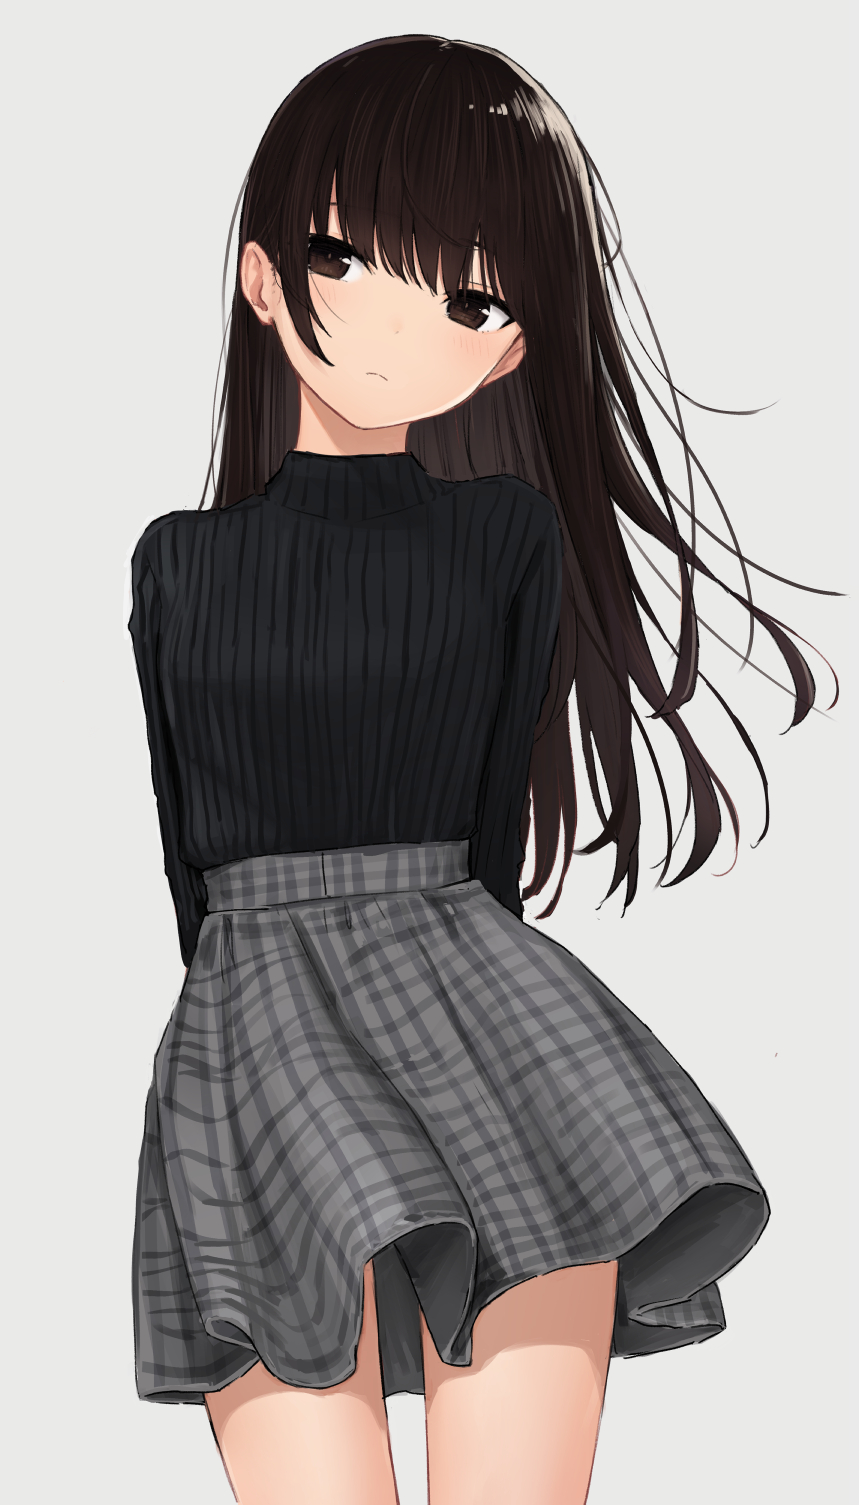 Anime 859x1505 anime anime girls digital art artwork 2D portrait display Zuima sweater skirt brunette brown eyes